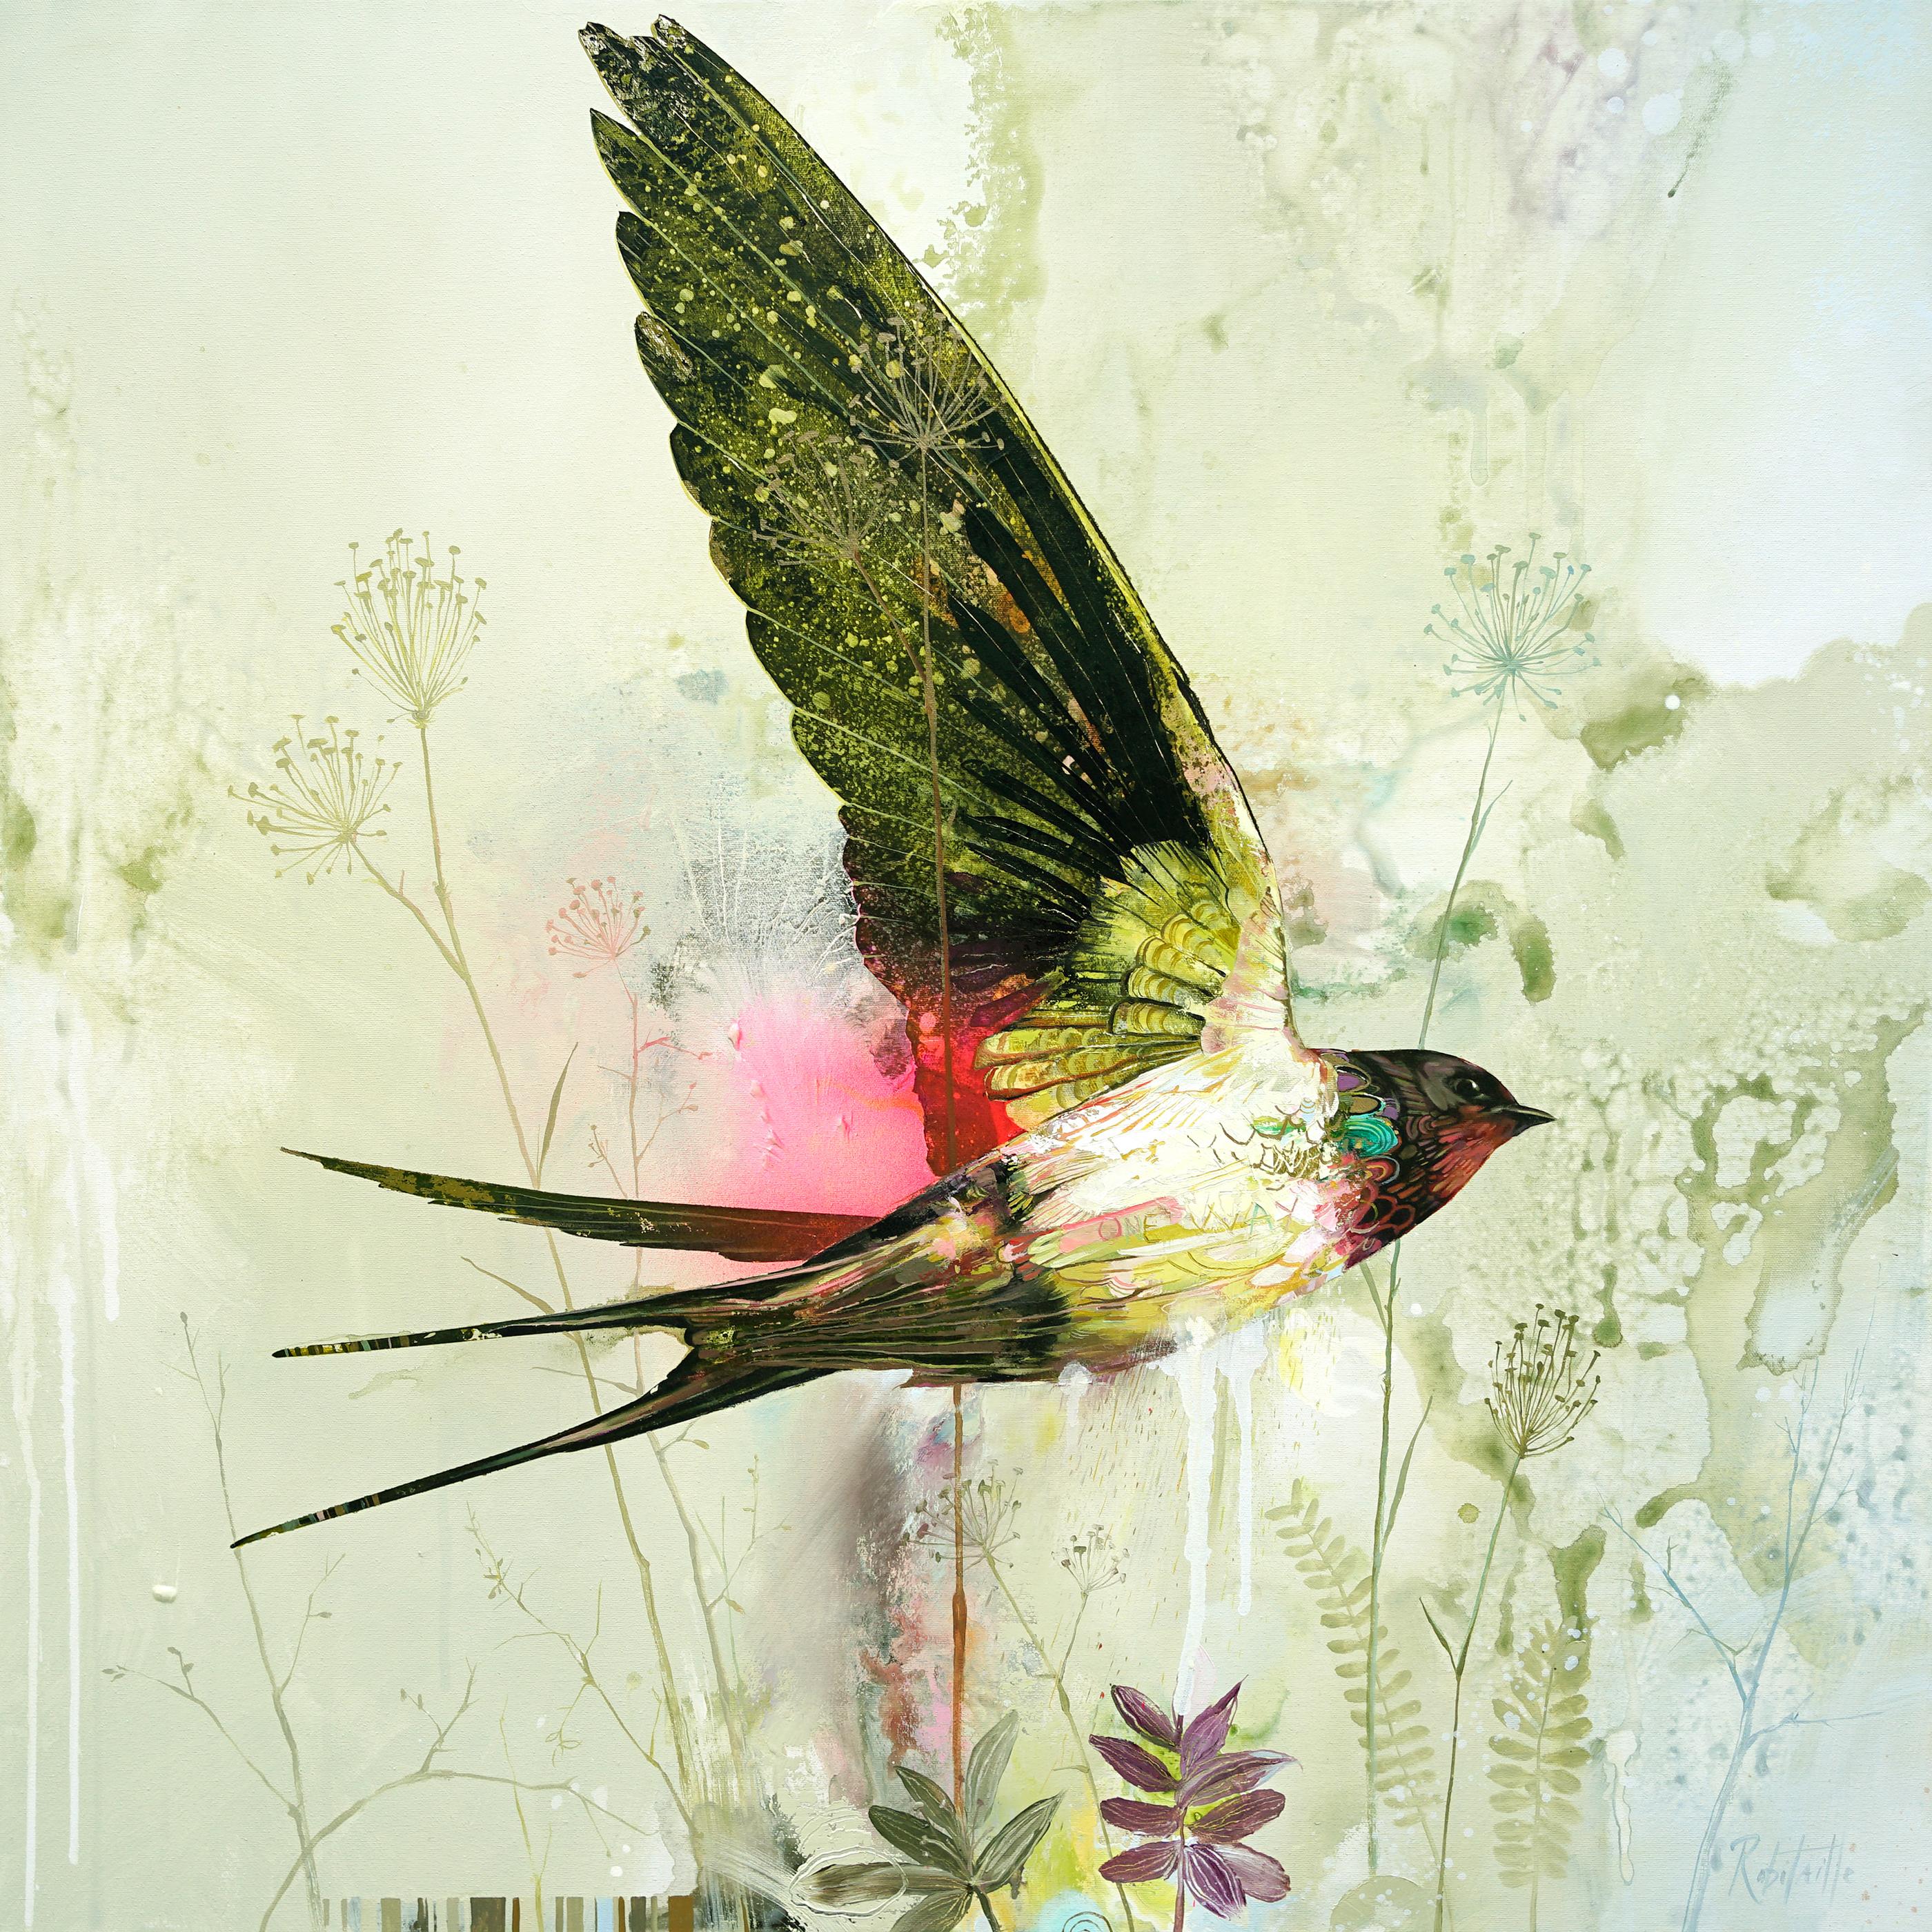 Animal Painting Eric Robitaille - Bruine et Supernova, peinture à l'huile abstraite réaliste avec oiseau volant, couleur ensoleillée